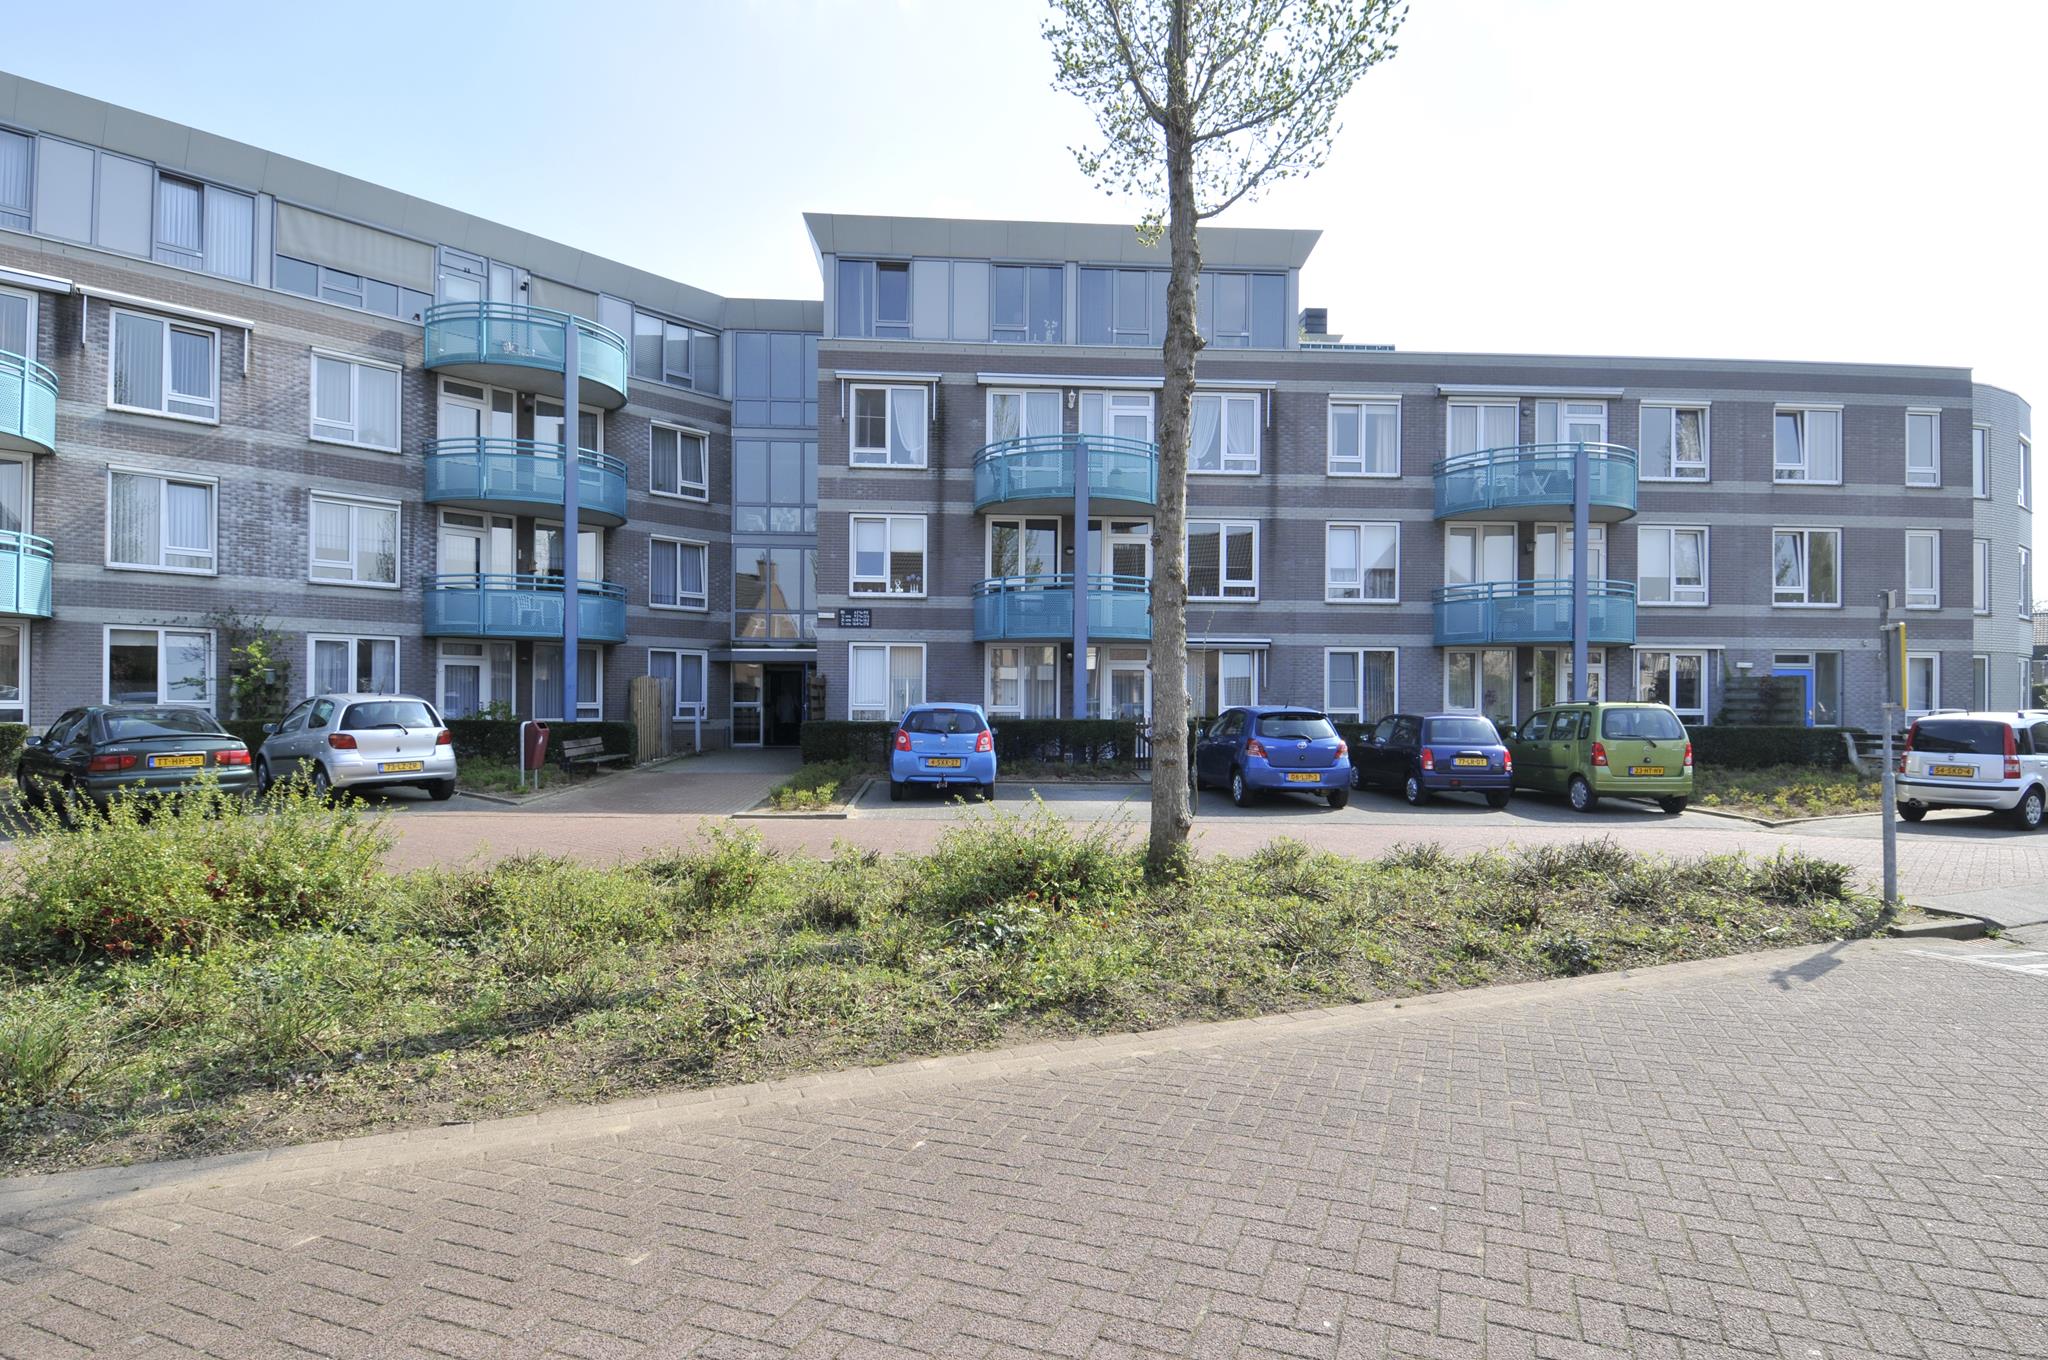 Brededwarsstraat 78, 6042 GZ Roermond, Nederland